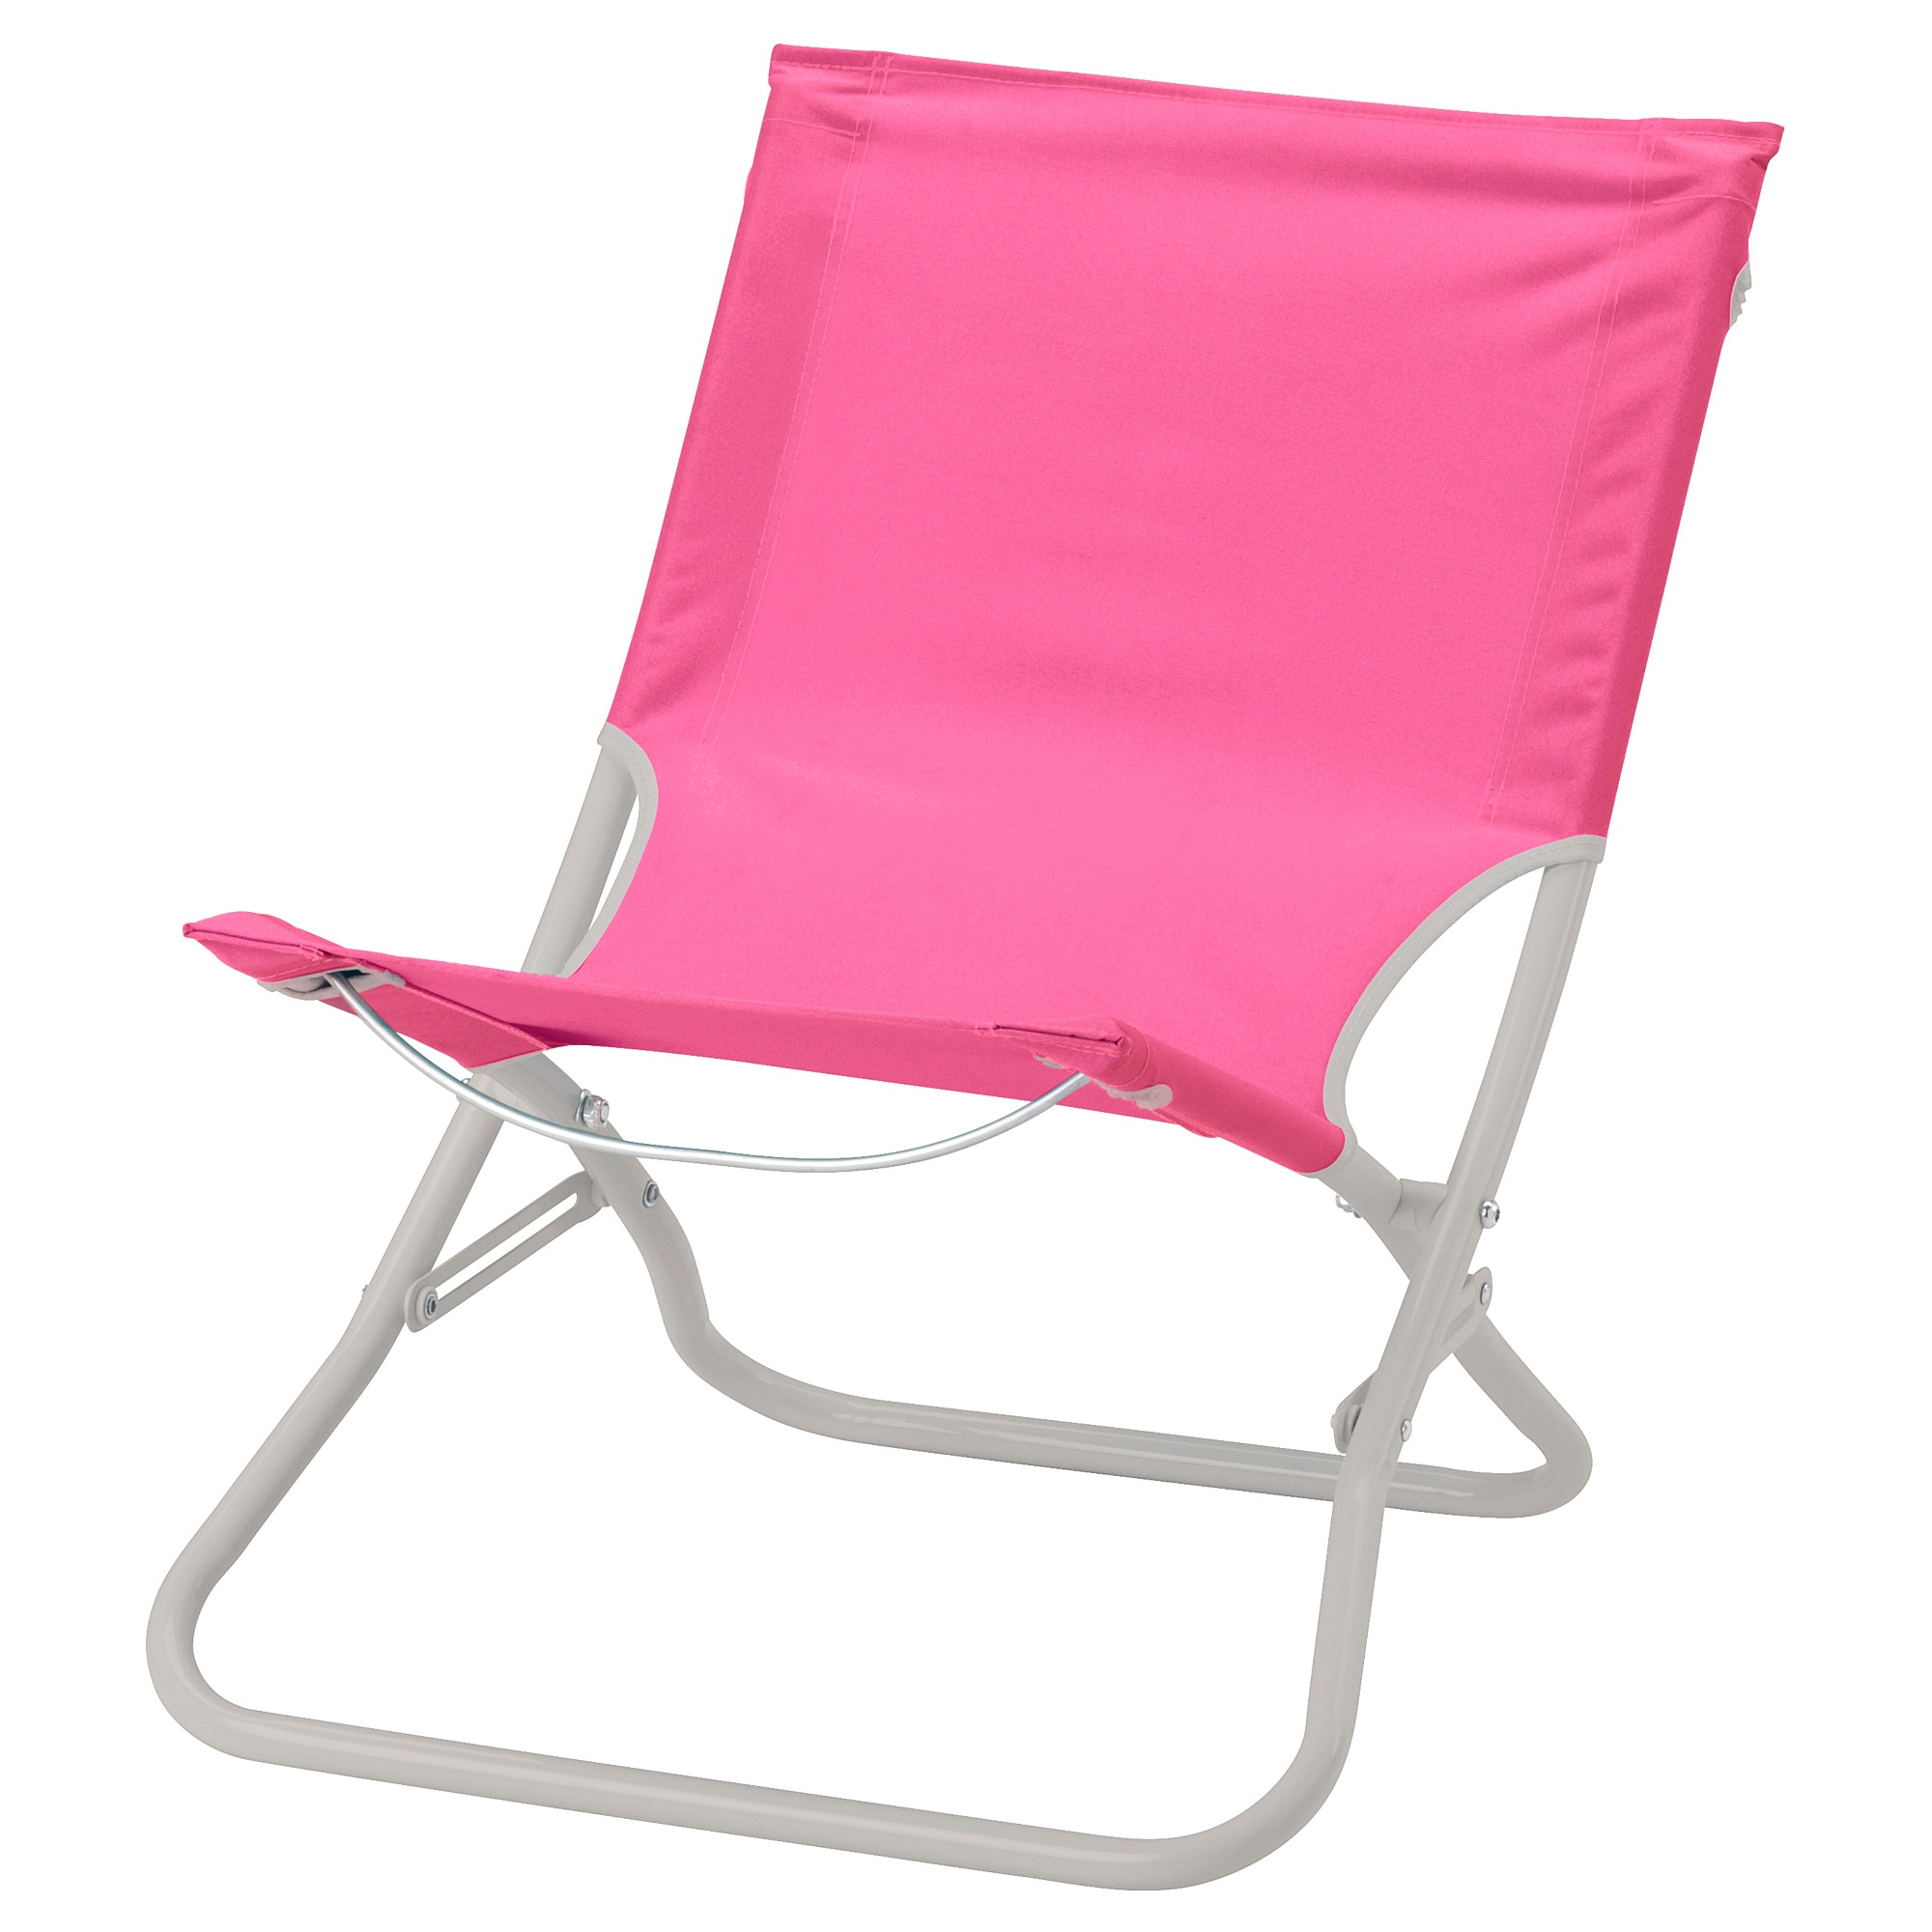 bain de soleil hamac transat ikea avec sur pied h c3 a5m b6 chaise de plage rose pe s5